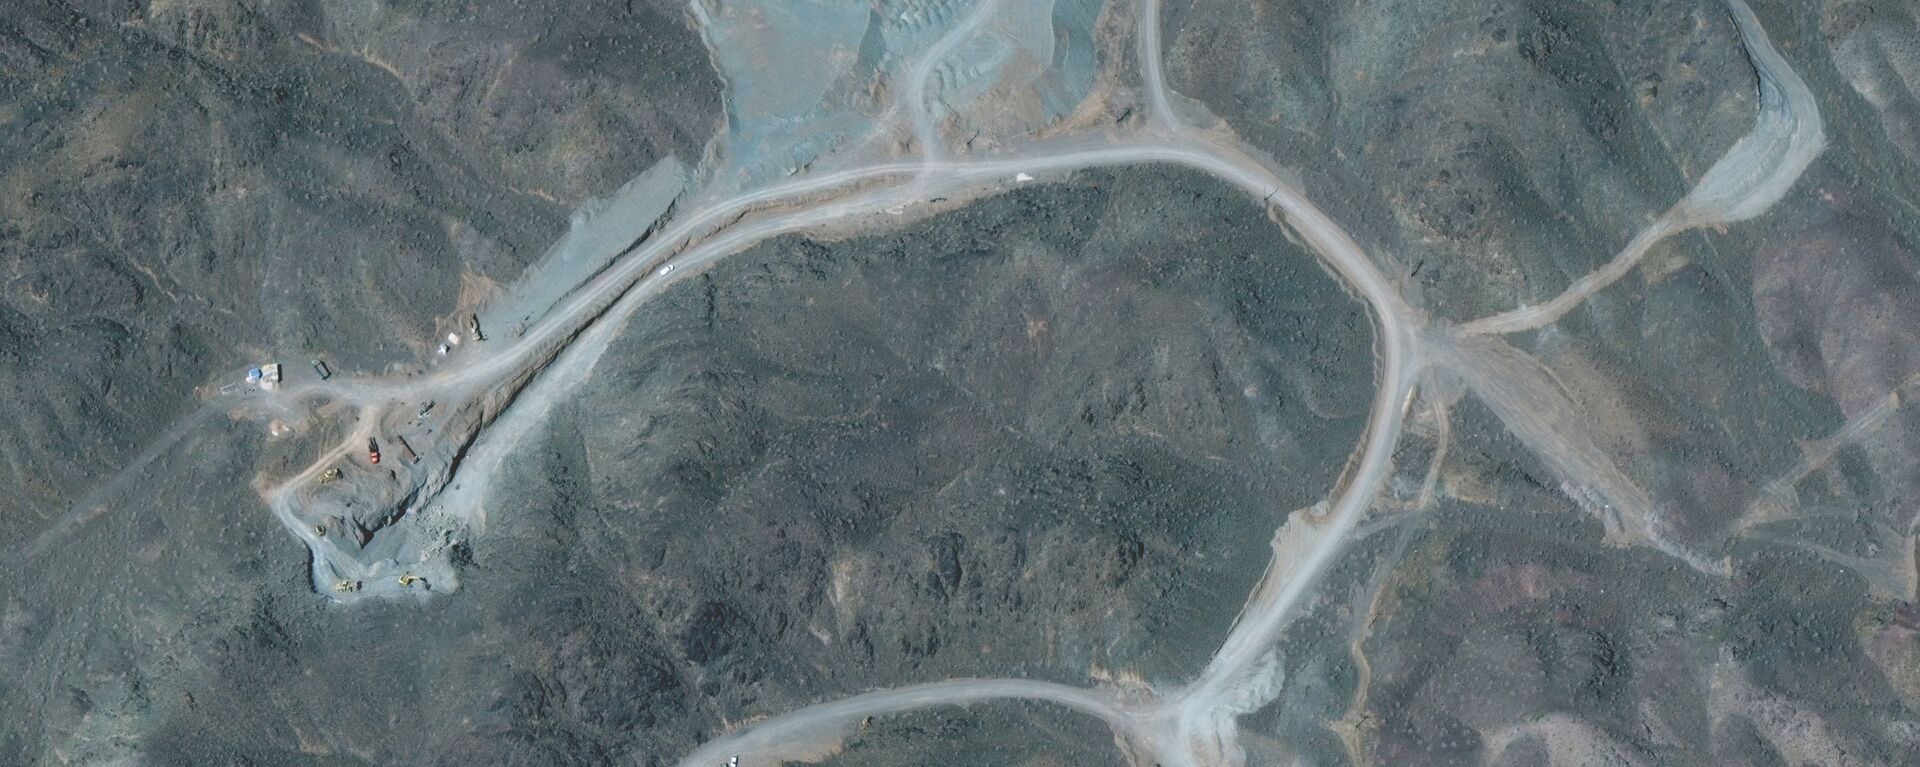 Usina de enriquecimento de urânio de Natanz, 250 quilômetros a sul de Teerã, capital do Irã, imagem de 12 de abril de 2021 - Sputnik Brasil, 1920, 12.12.2021